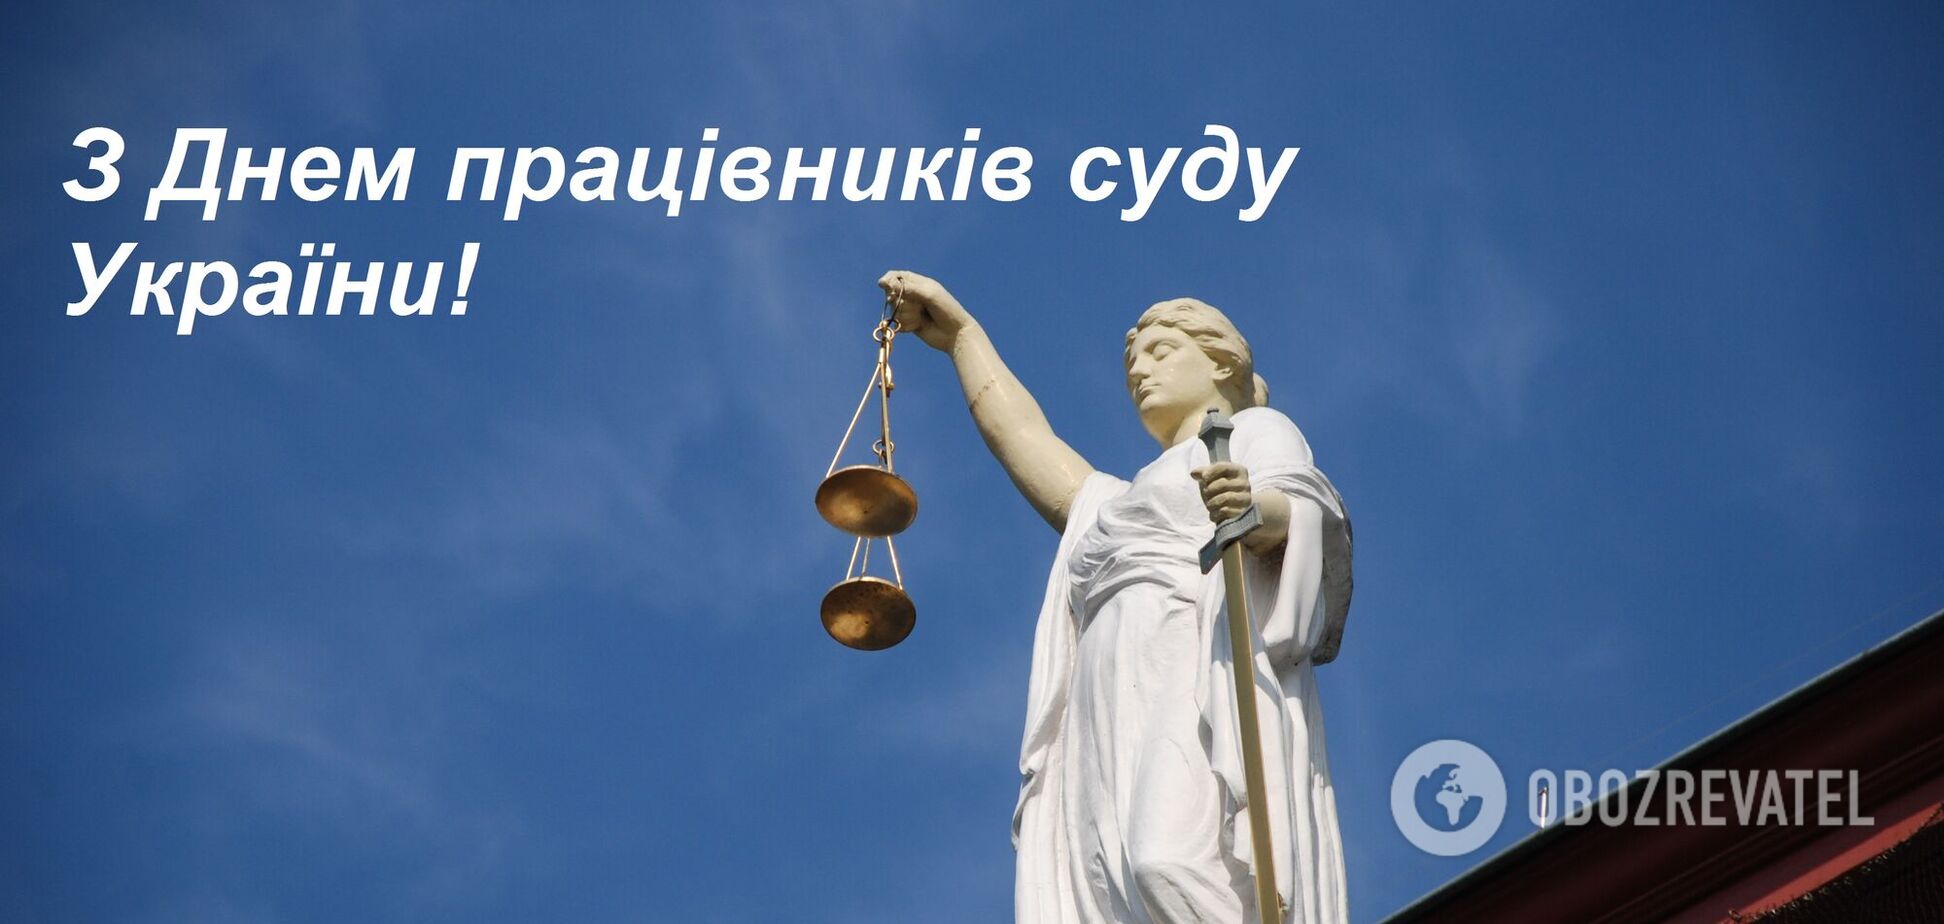 Поздравления с Днем работников суда Украины 2021